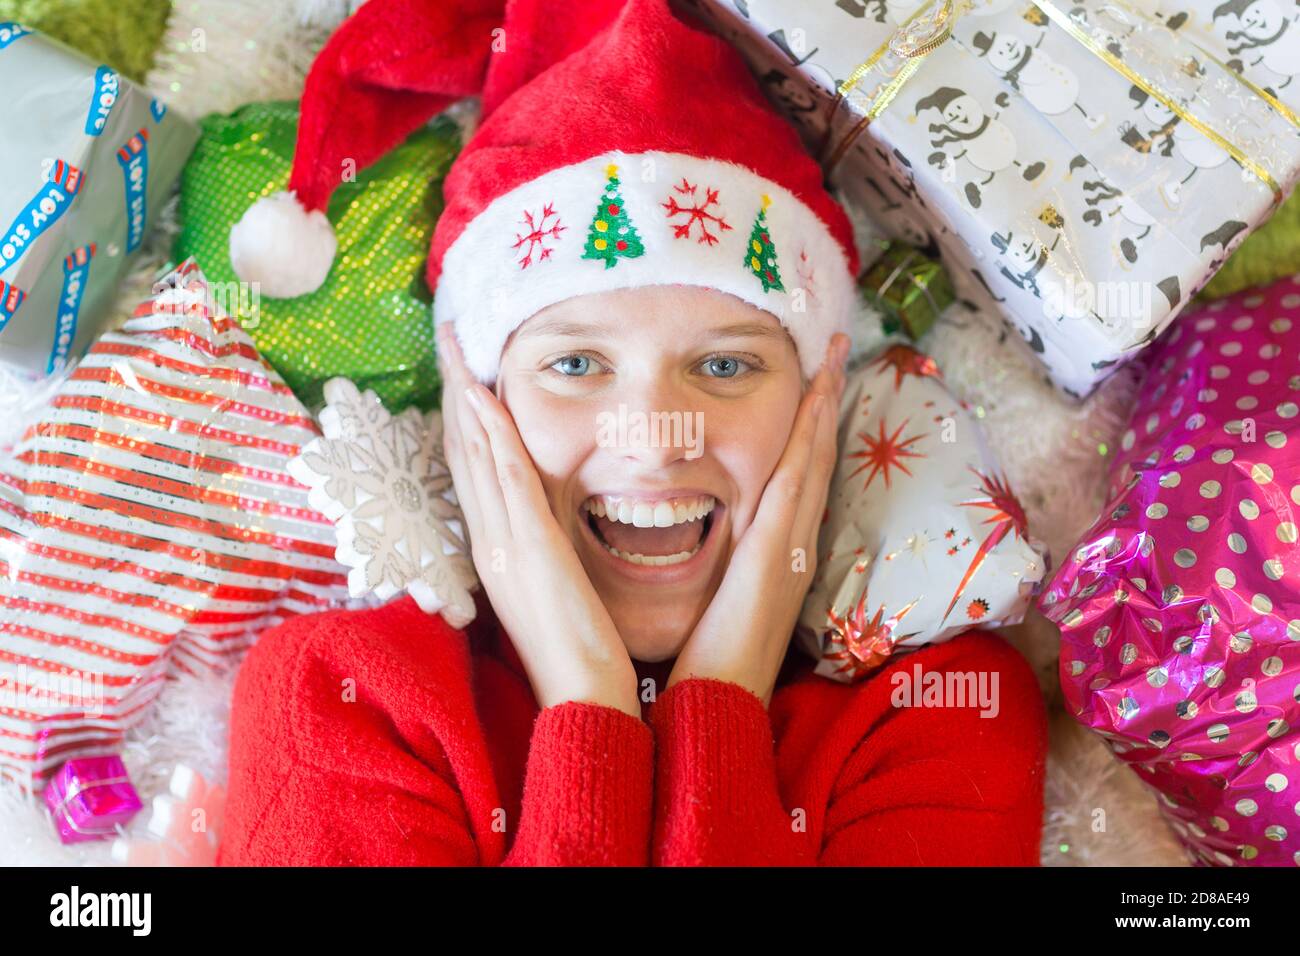 ¡Navidad! Alegre mujer joven emocionada acostada rodeada de muchos regalos con un sombrero rojo de Santa. Foto de stock